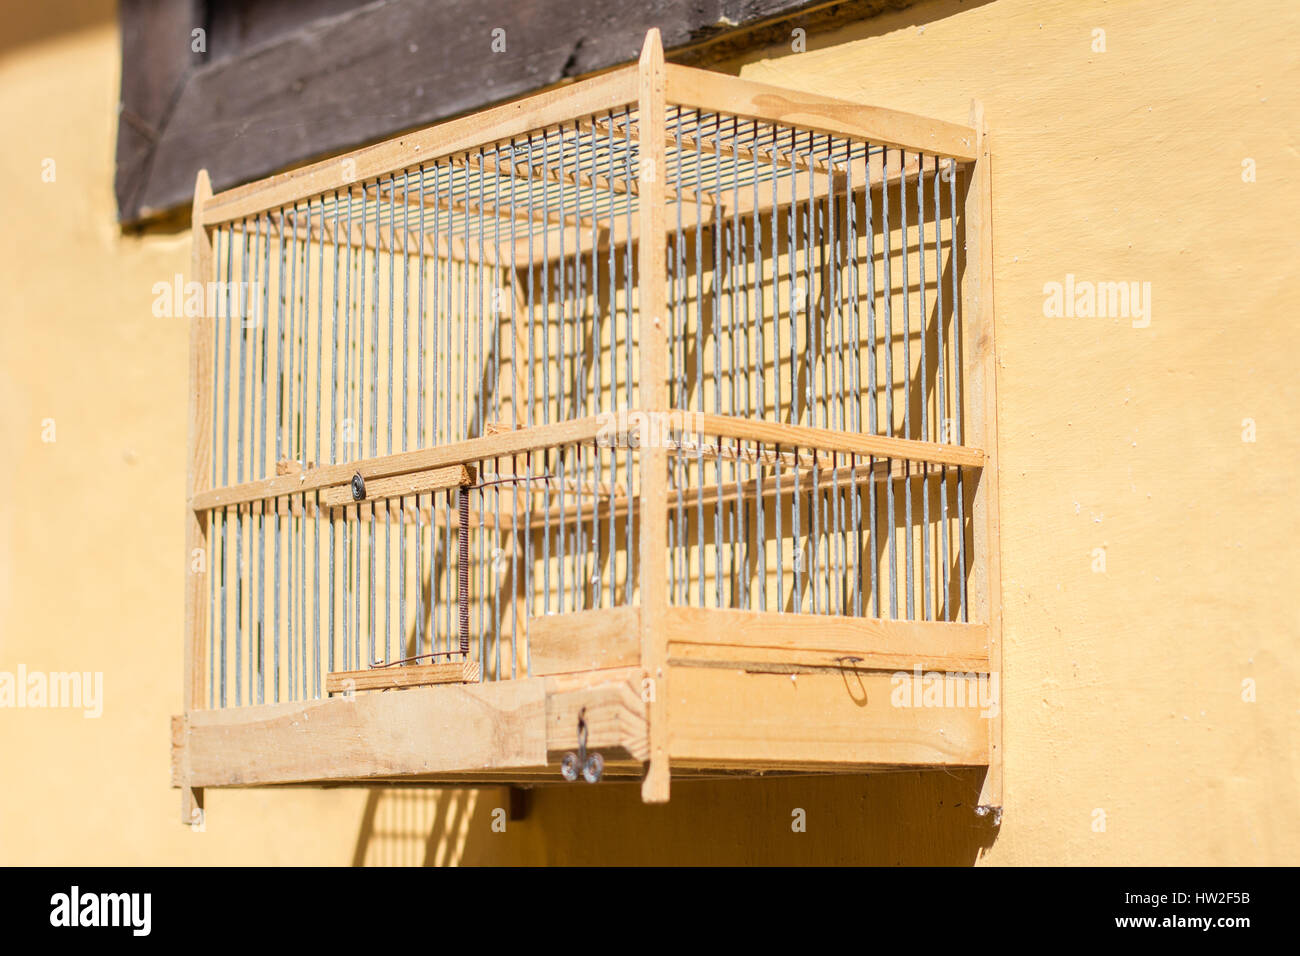 leer aus Holz Vogelkäfig gelbe Wand hängen Stockfotografie - Alamy